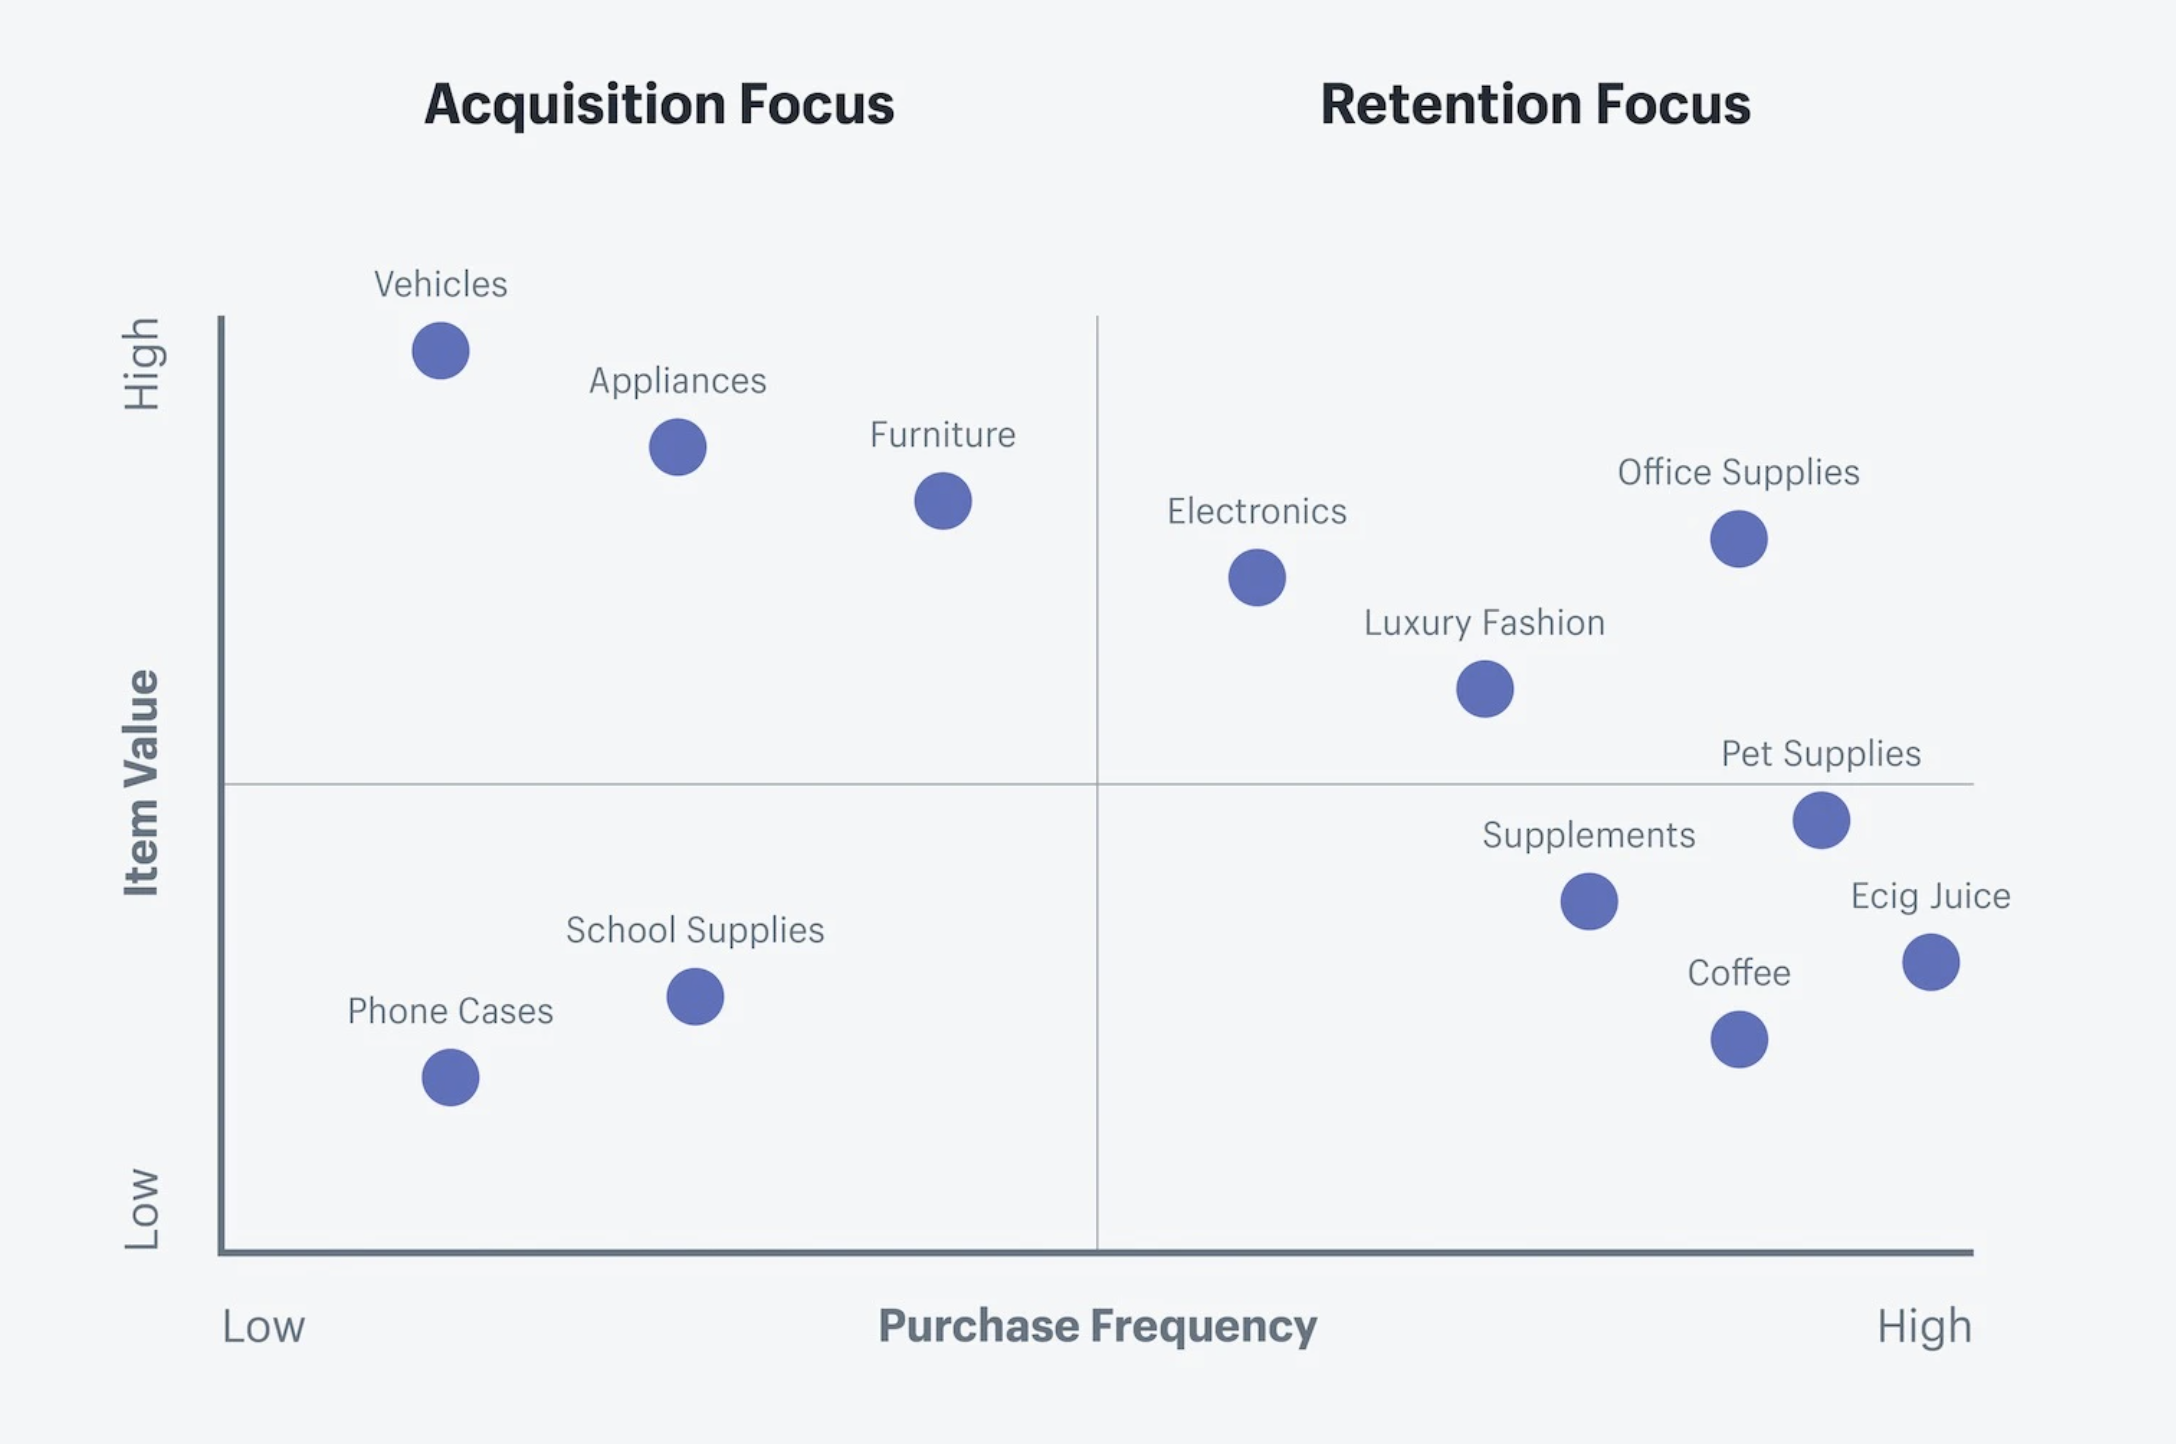 Retention Focus Vs Acquisition Focus